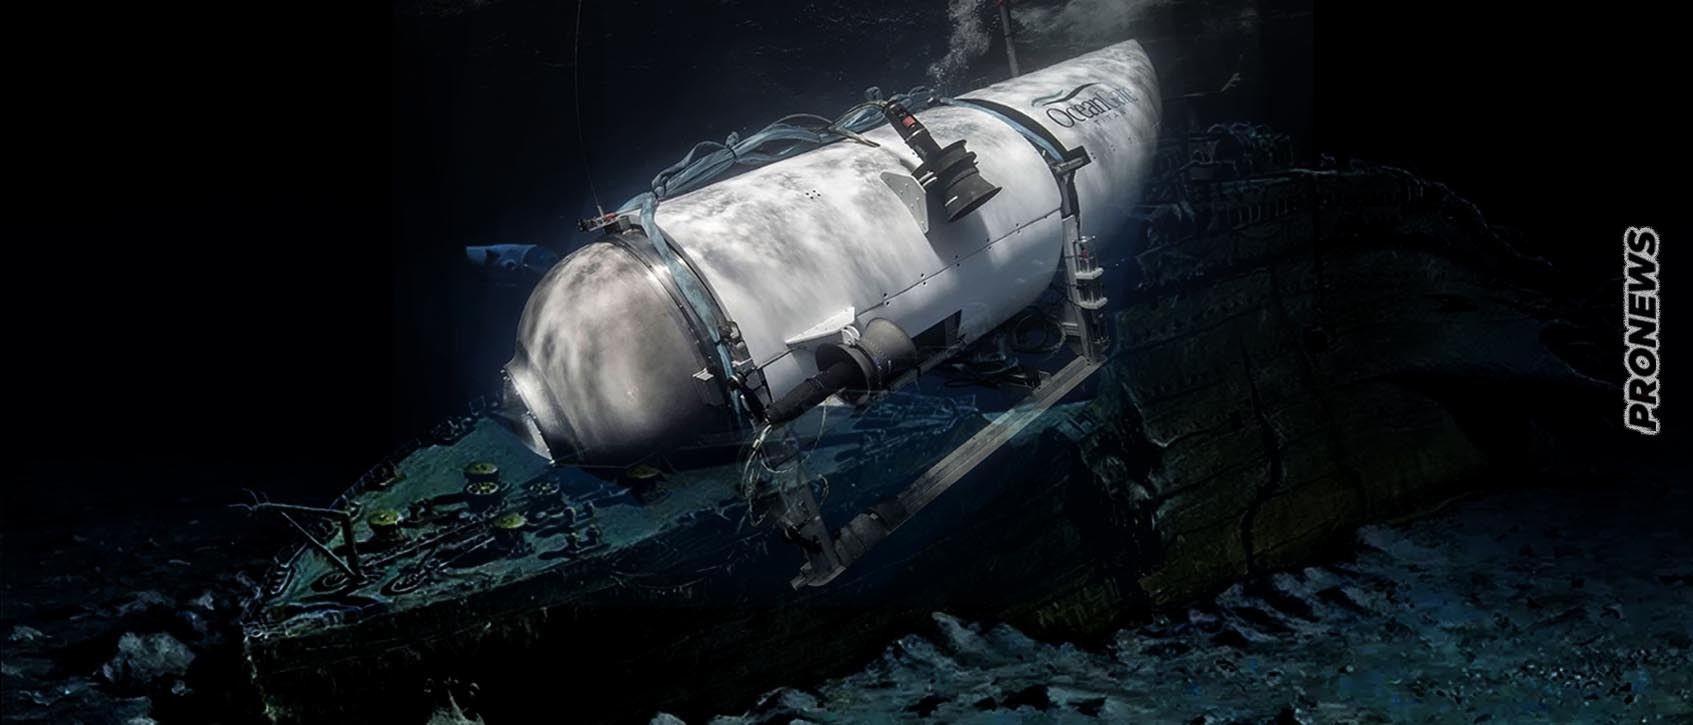 «Το κατάπιε ο Τιτανικός»: Το εφιαλτικό σενάριο για το υποβρύχιο που χάθηκε στον Ατλαντικό – Αύριο τους τελειώνει το οξυγόνο